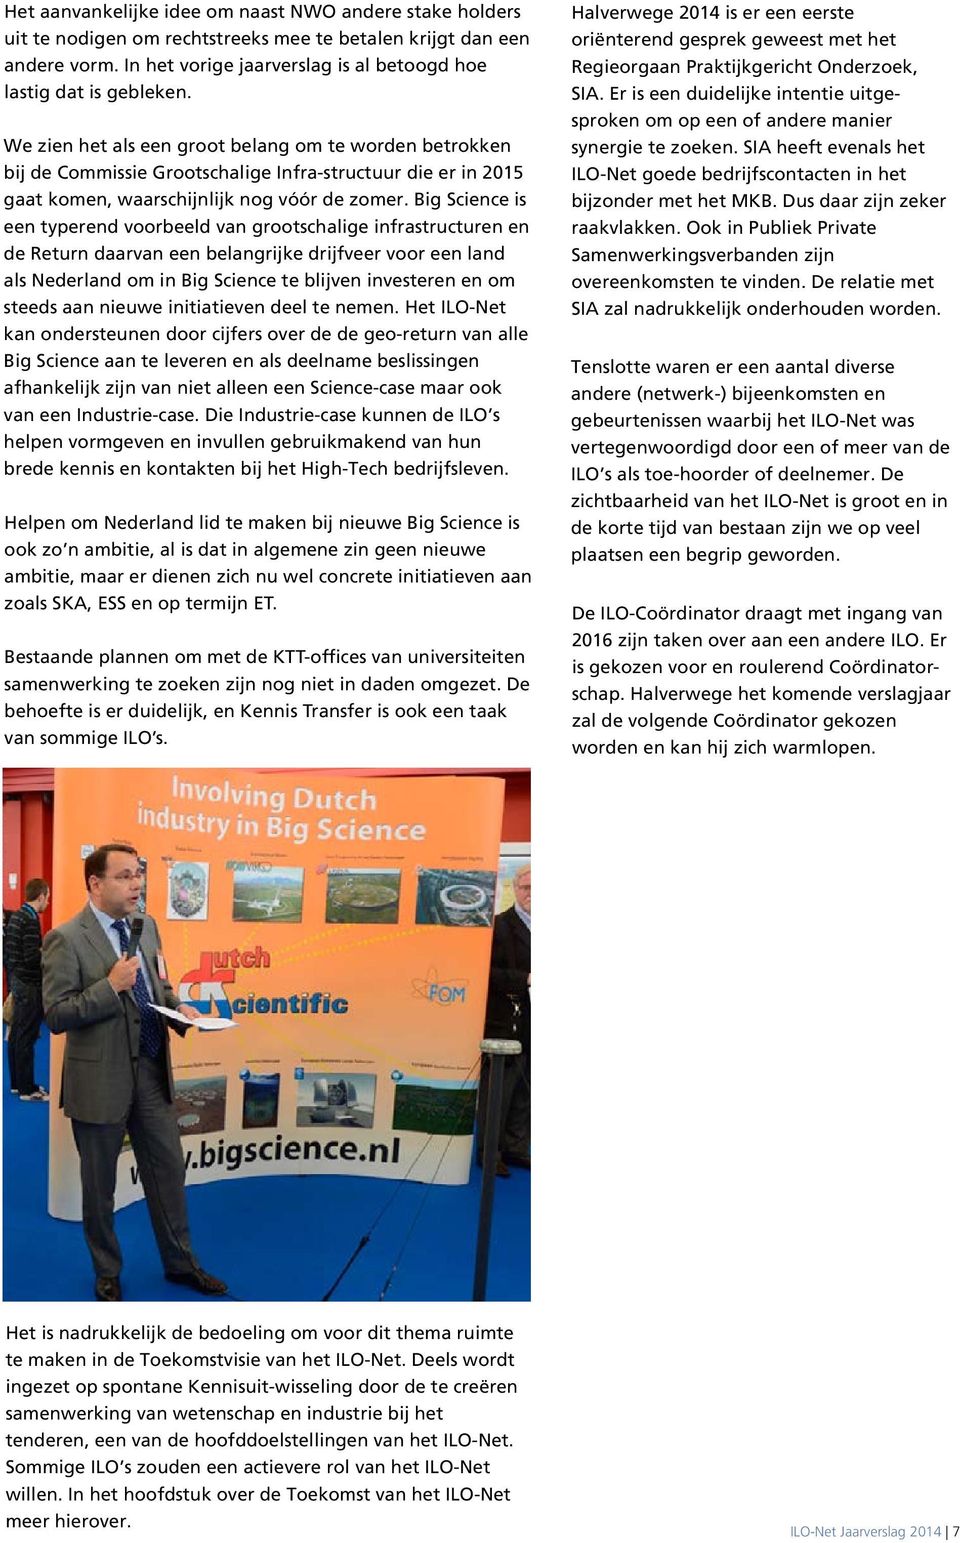 Big Science is een typerend voorbeeld van grootschalige infrastructuren en de Return daarvan een belangrijke drijfveer voor een land als Nederland om in Big Science te blijven investeren en om steeds